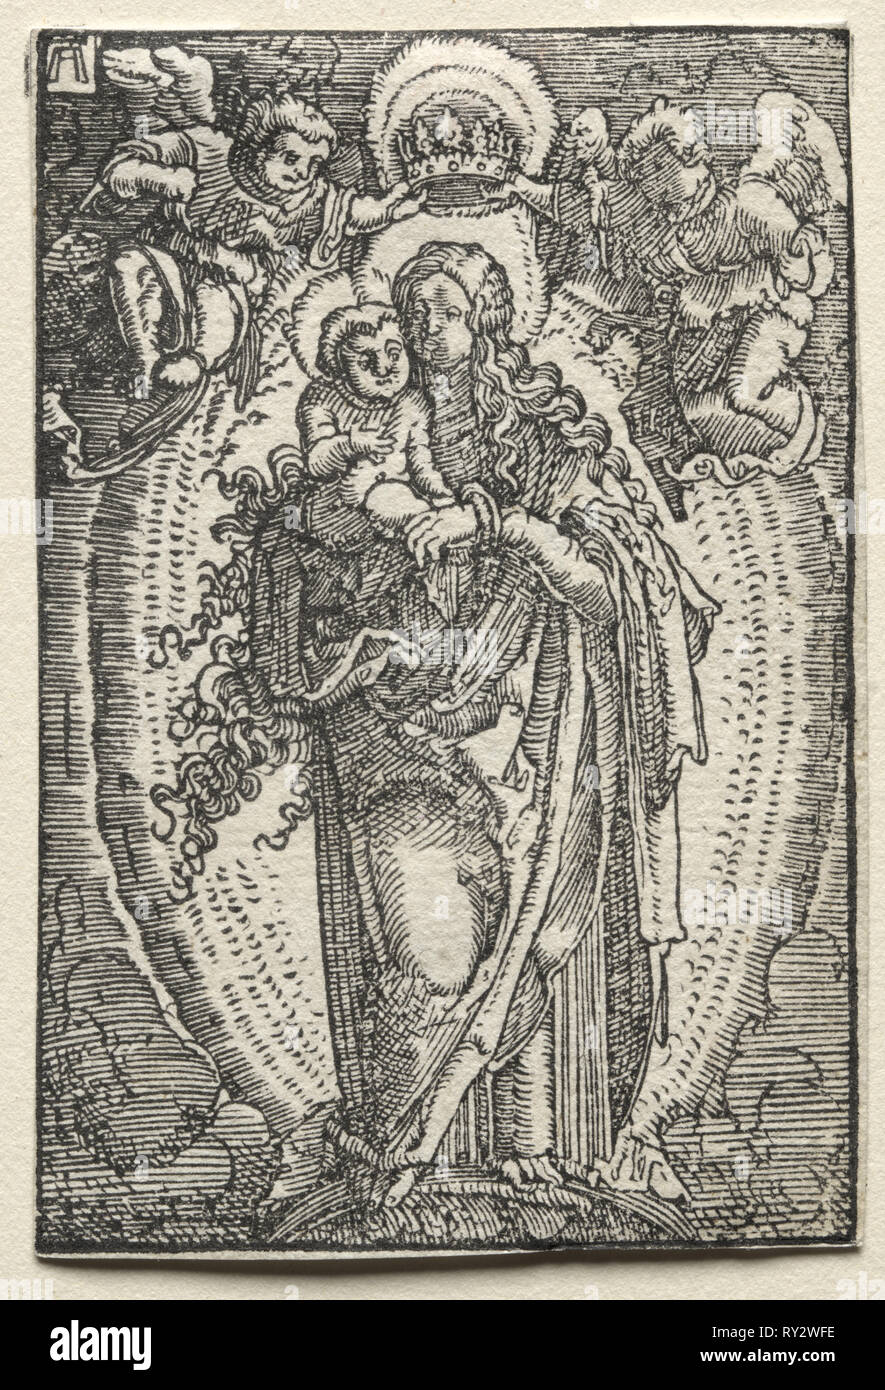 La caduta e la redenzione dell'uomo: la Vergine come Regina del Cielo, c. 1515. Albrecht Altdorfer (tedesco, c. 1480-1538). Xilografia Foto Stock